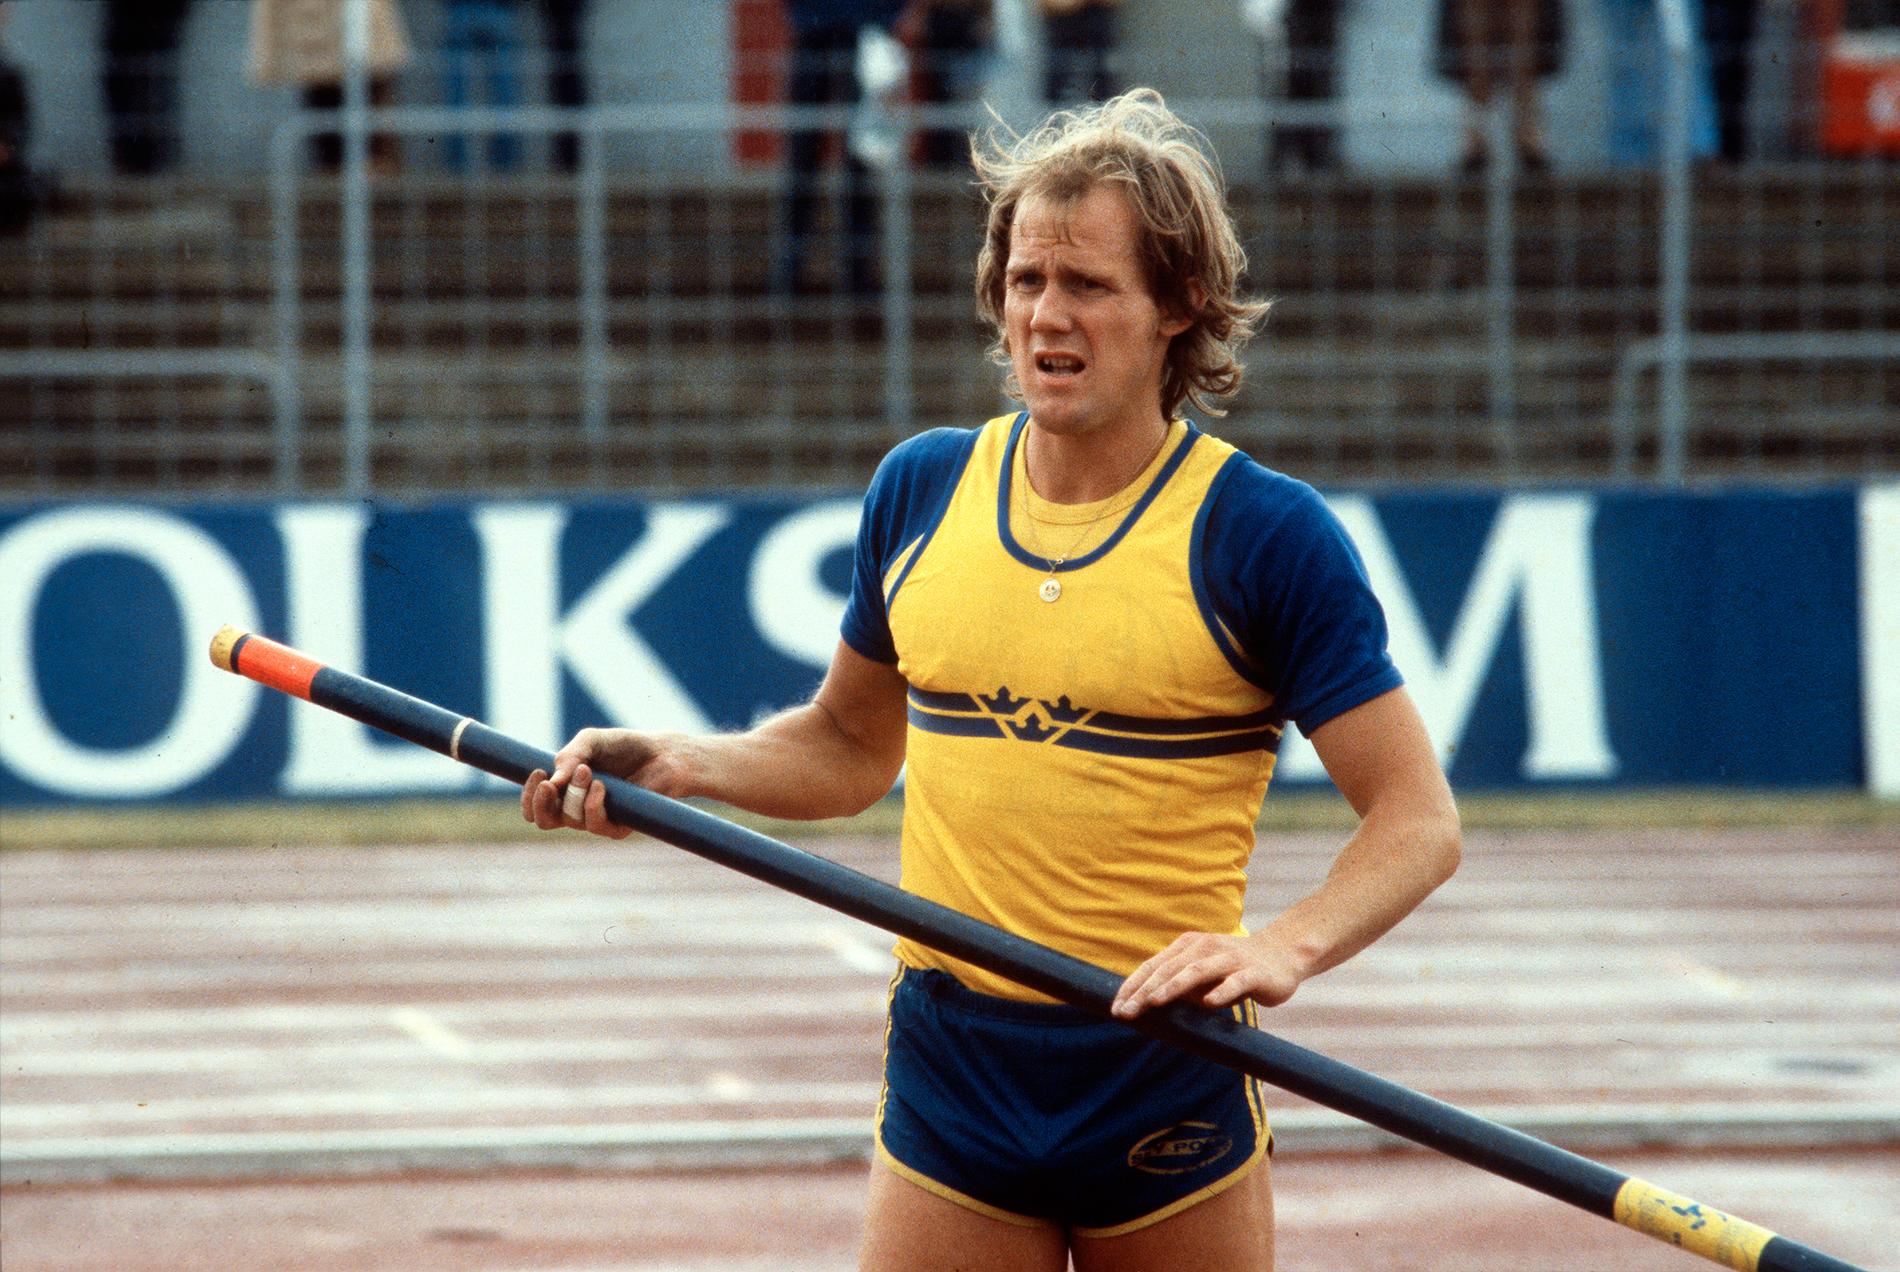 Stavhoppskarriären var lång och Kjell Isaksson vann bland annat tio SM-guld. Det svenska rekordet höll han från 1968 till 1983. EM-silver blev det både 1969 och 1971.